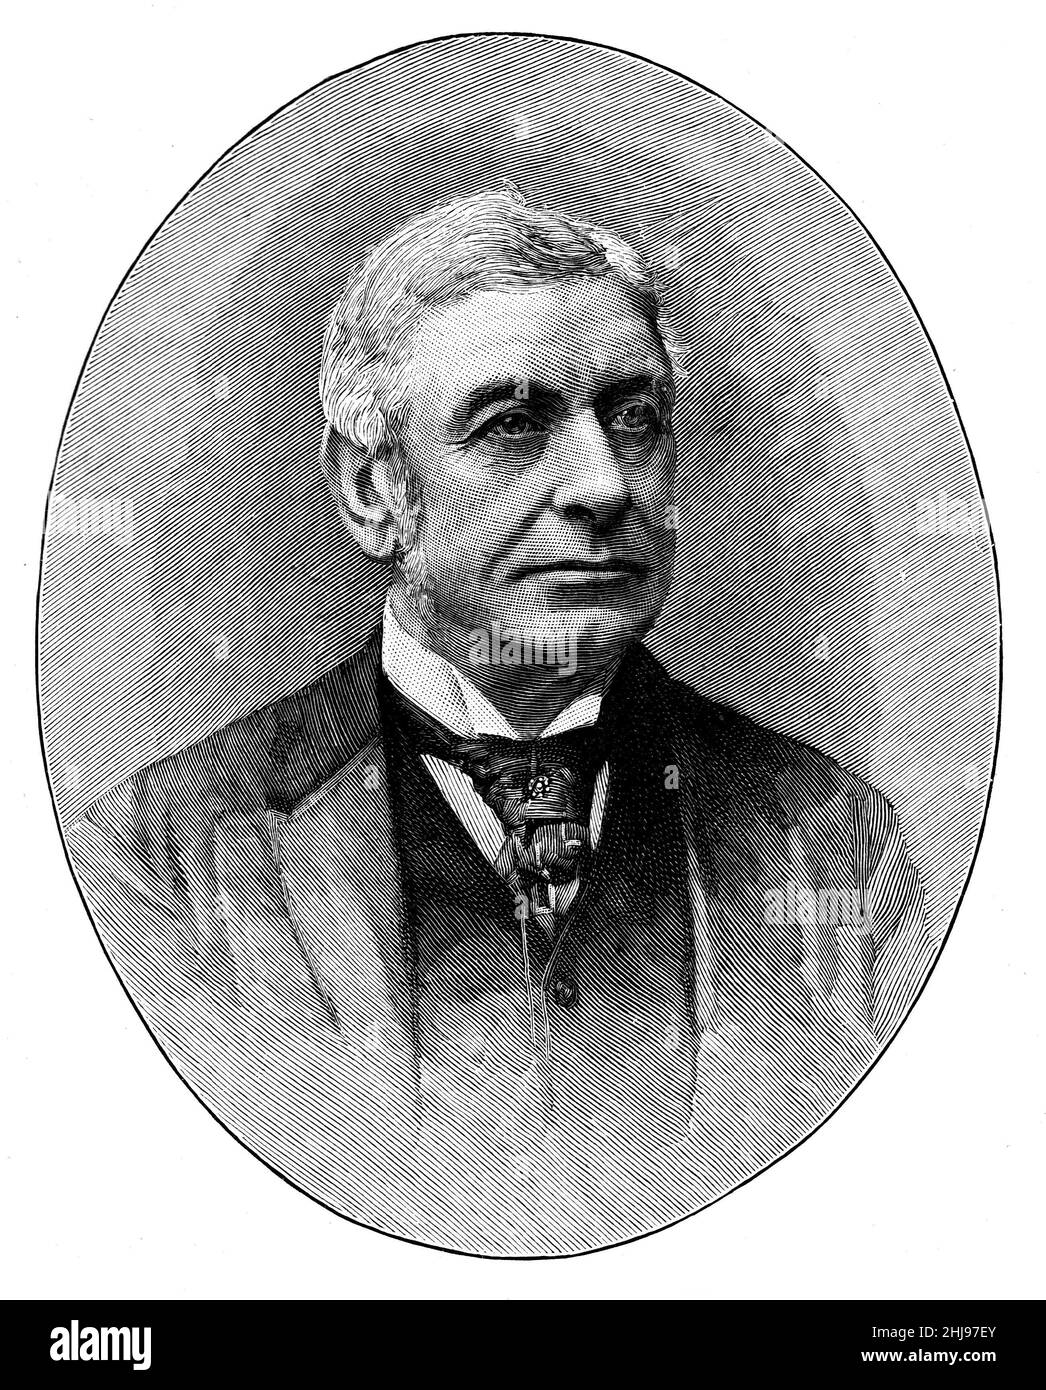 Ilustración en blanco y negro; Retrato del Muy Honorable John William Mellor, MP. Abogado inglés y político del Partido Liberal Foto de stock